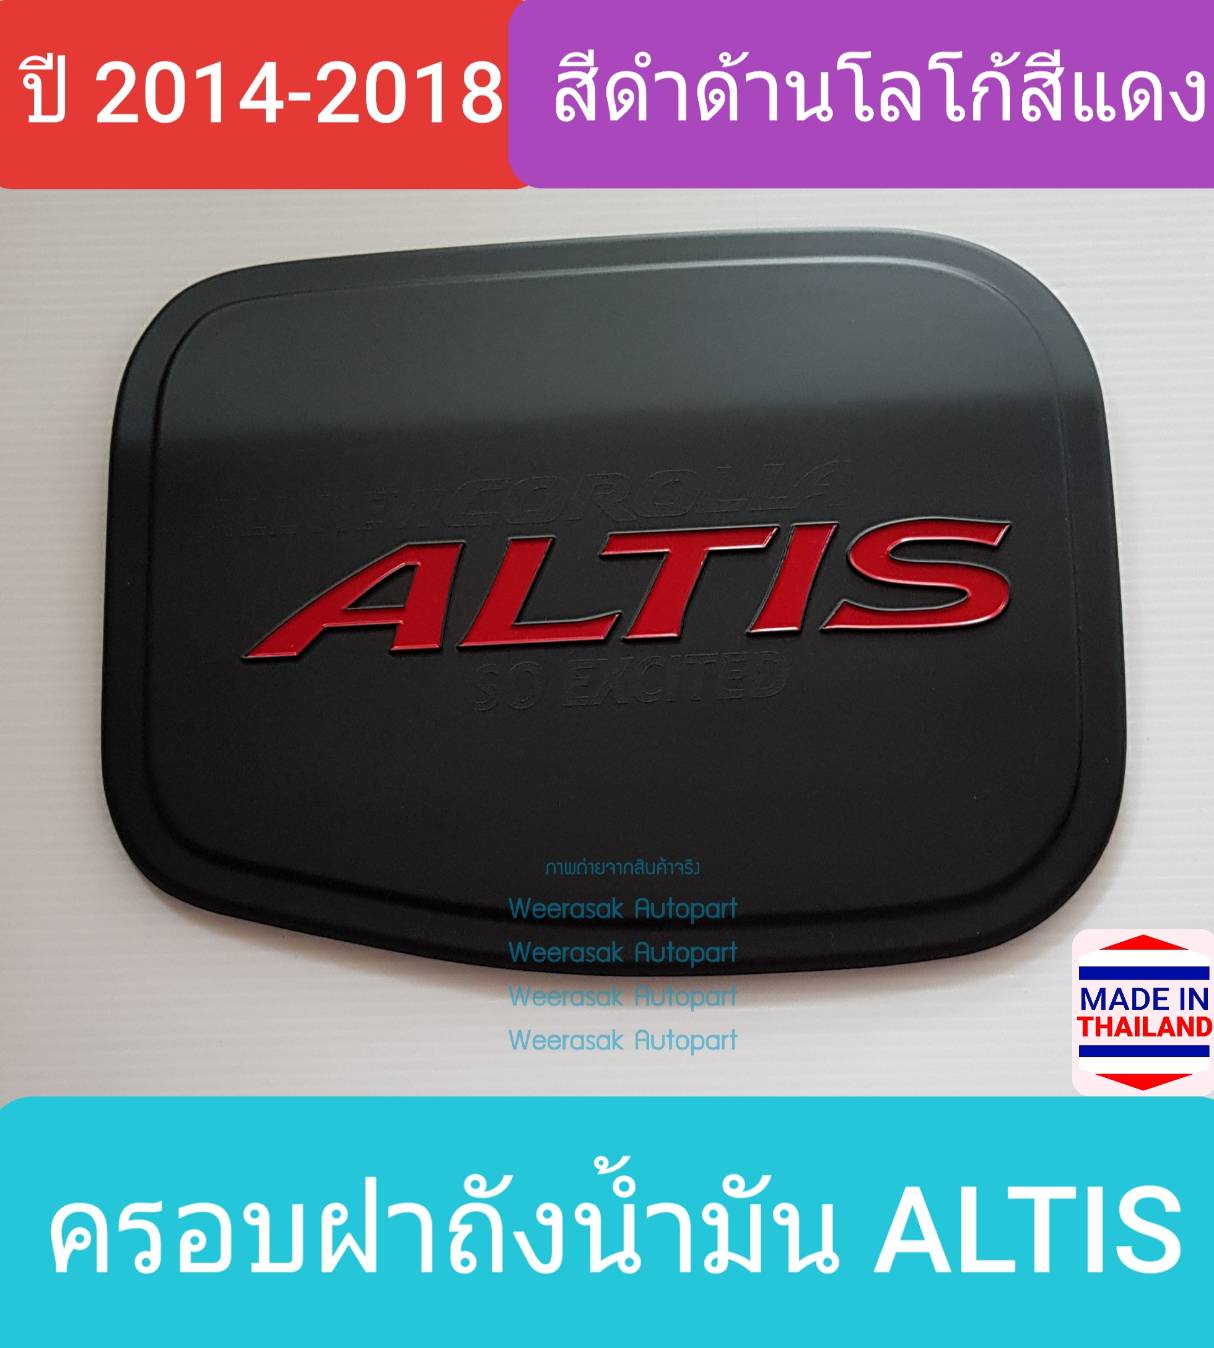 ครอบฝาถังน้ำมัน Toyota Altis โตโยต้า อัลติส ปี 2014-2018 (สีดำด้านโลโก้สีแดง) (ใช้เทปกาว 3M)